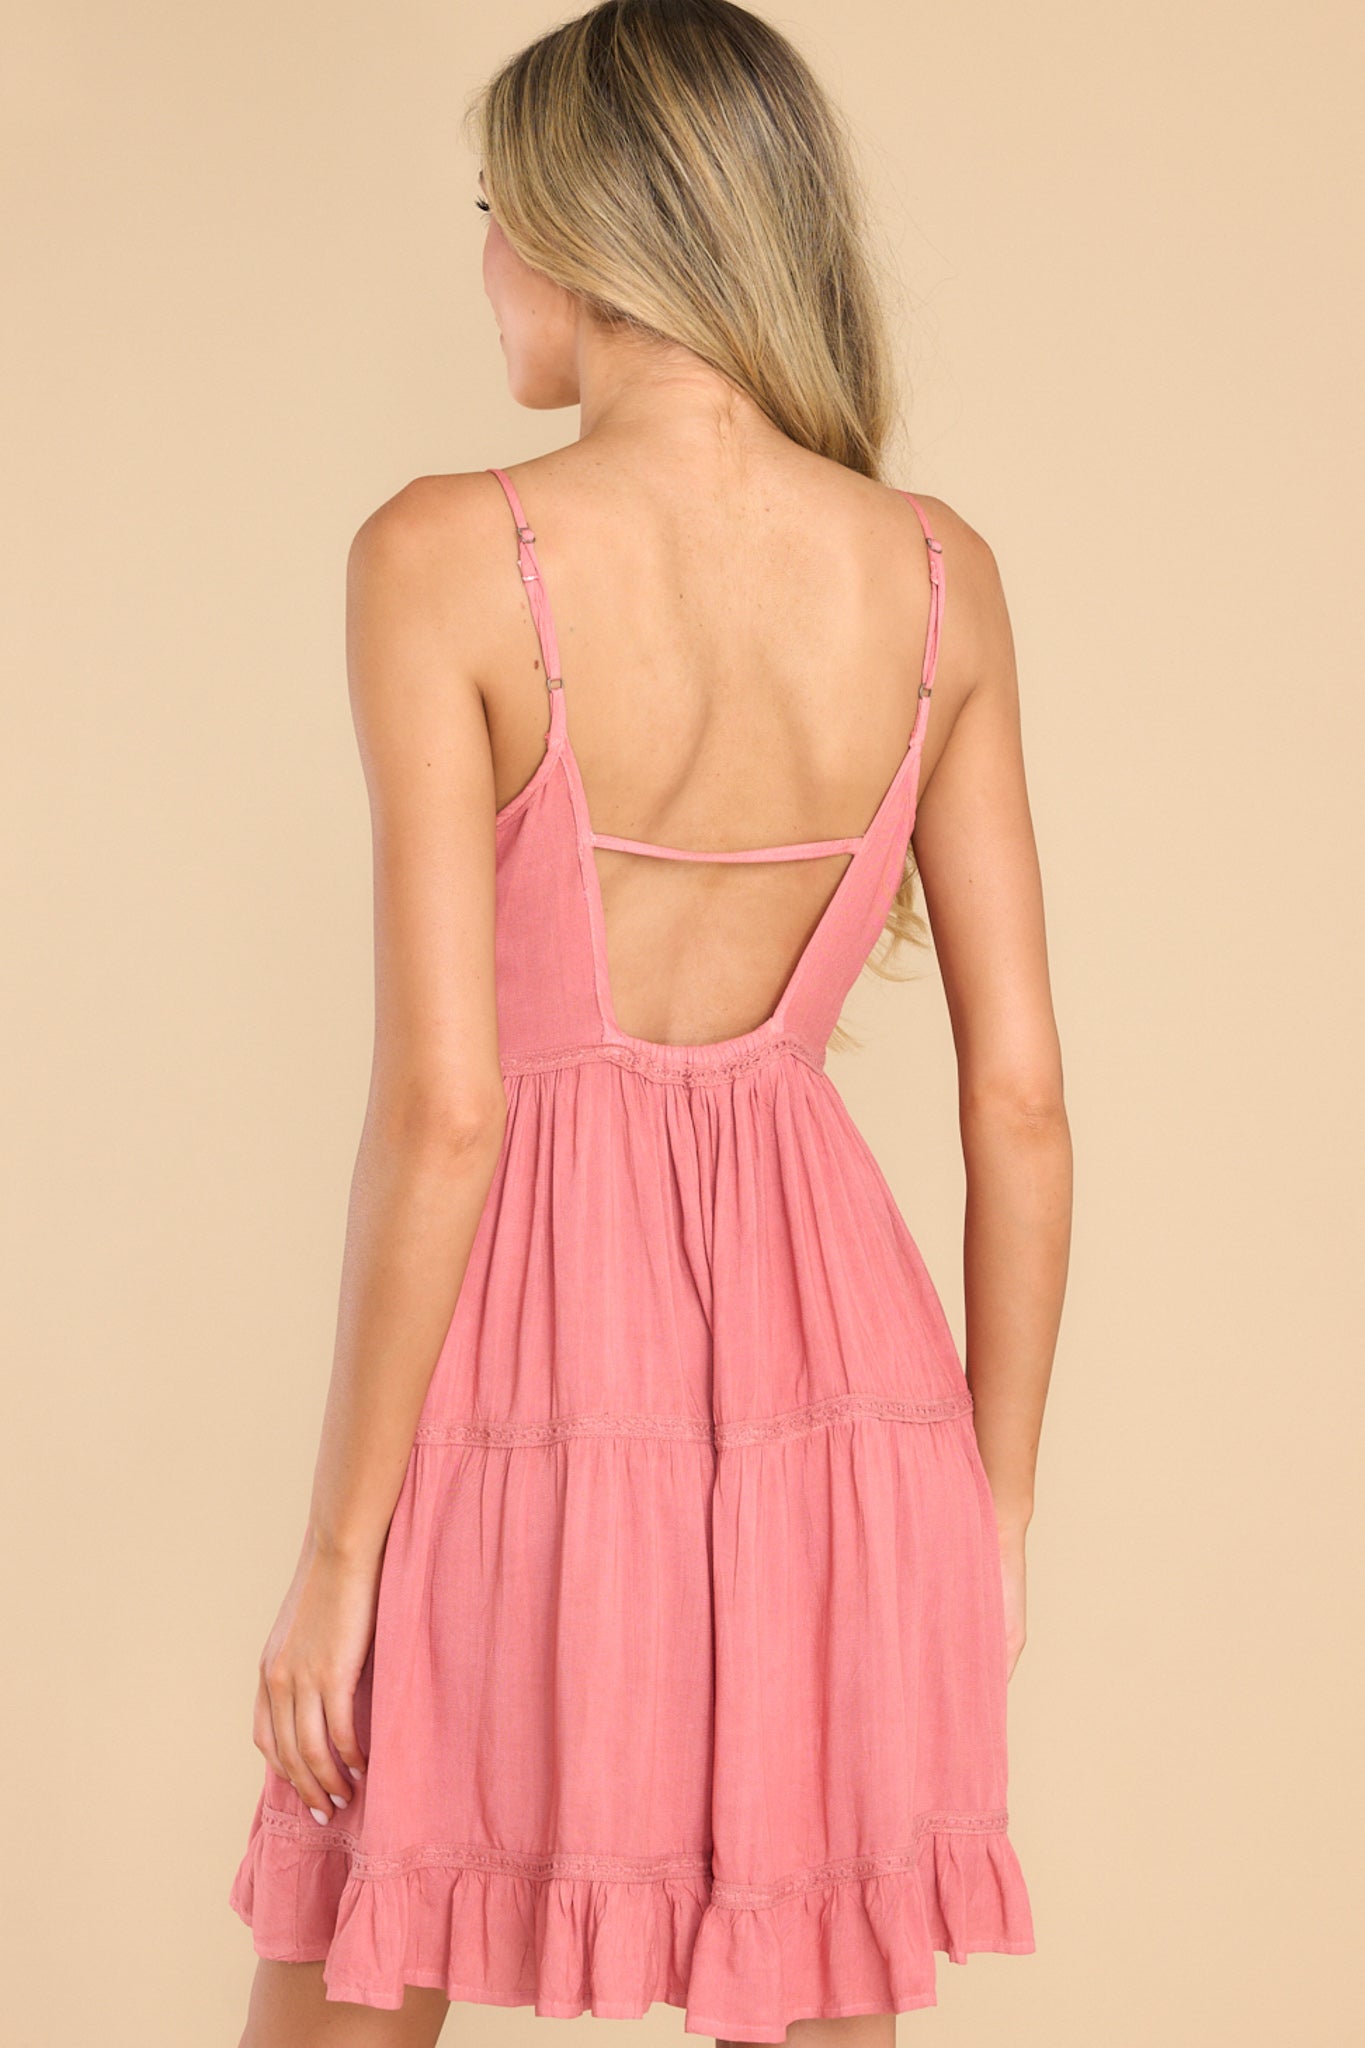 light pink mini dress